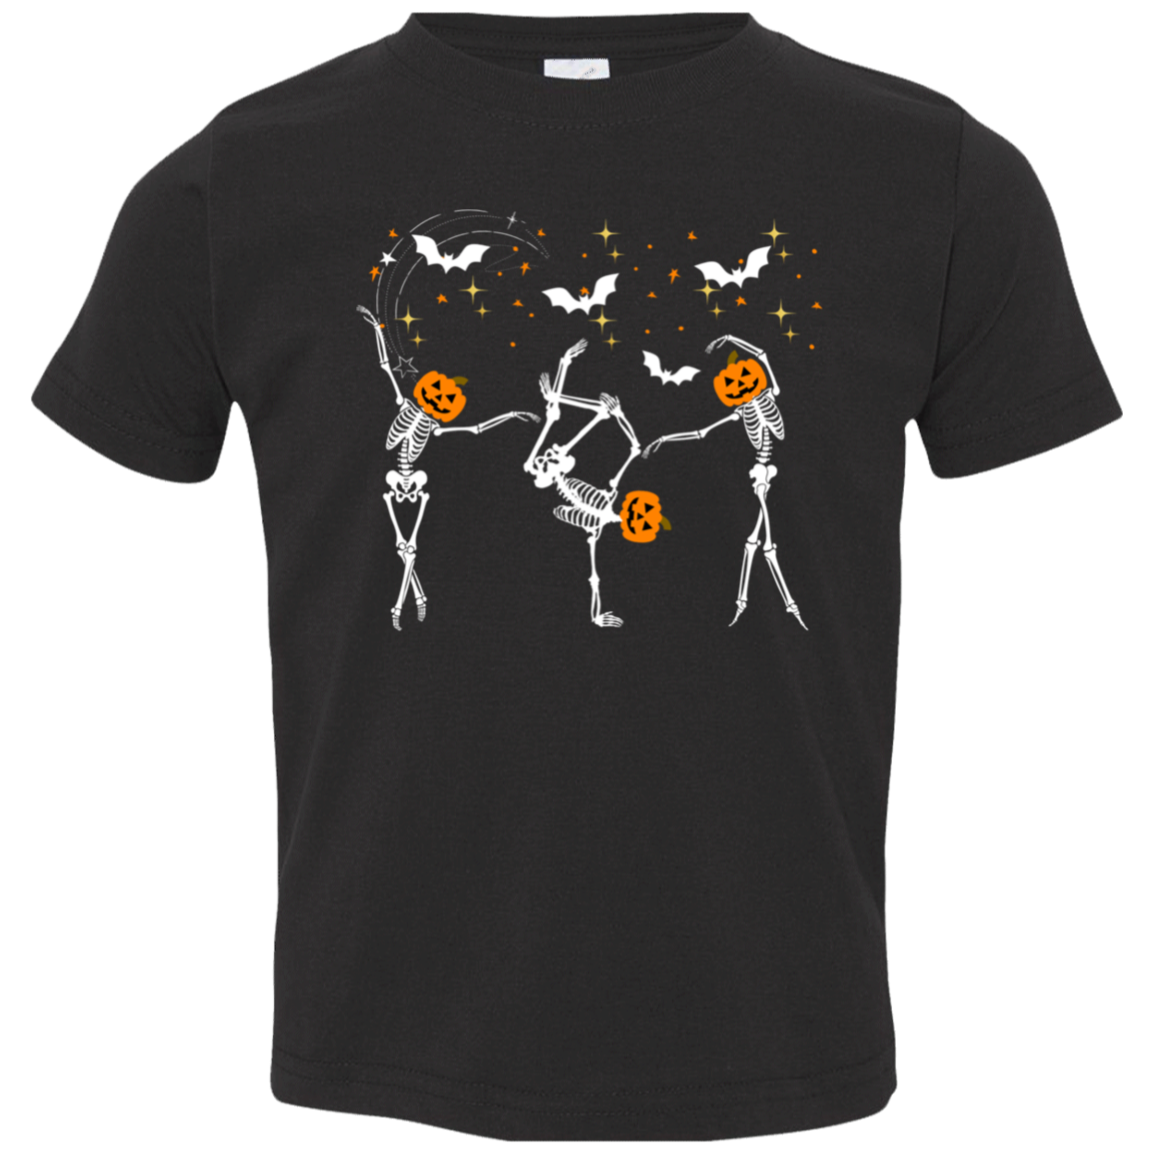 Dancing Skeletons - Girls' Toddler Jersey T-Shirt